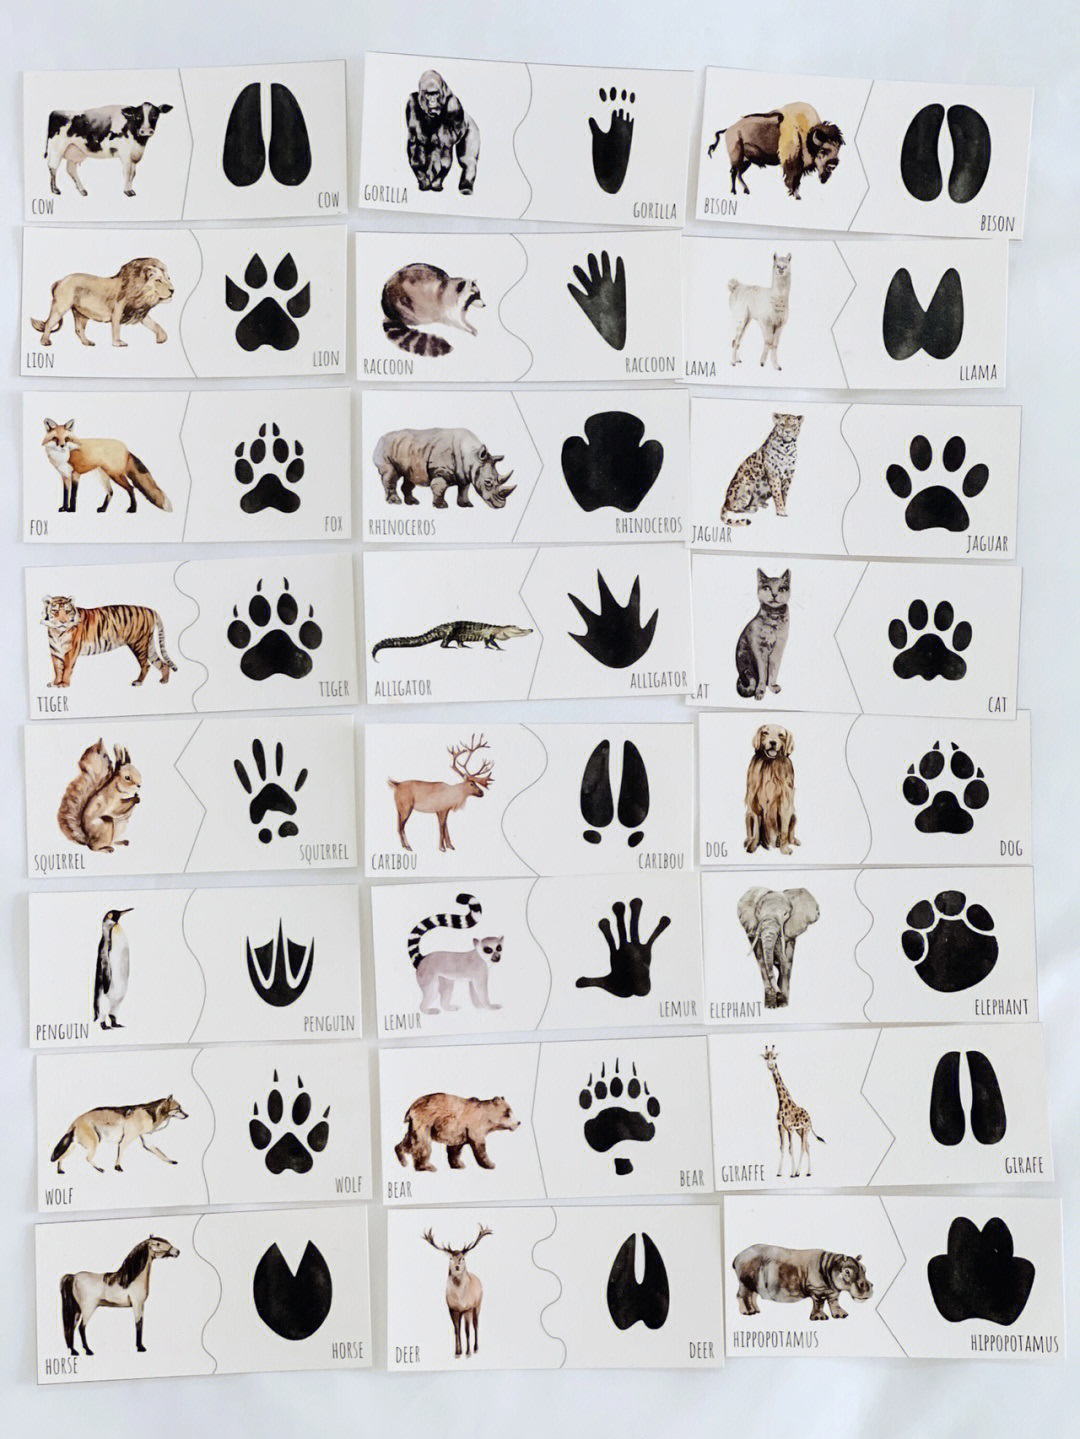 动物的脚印名称和图案图片